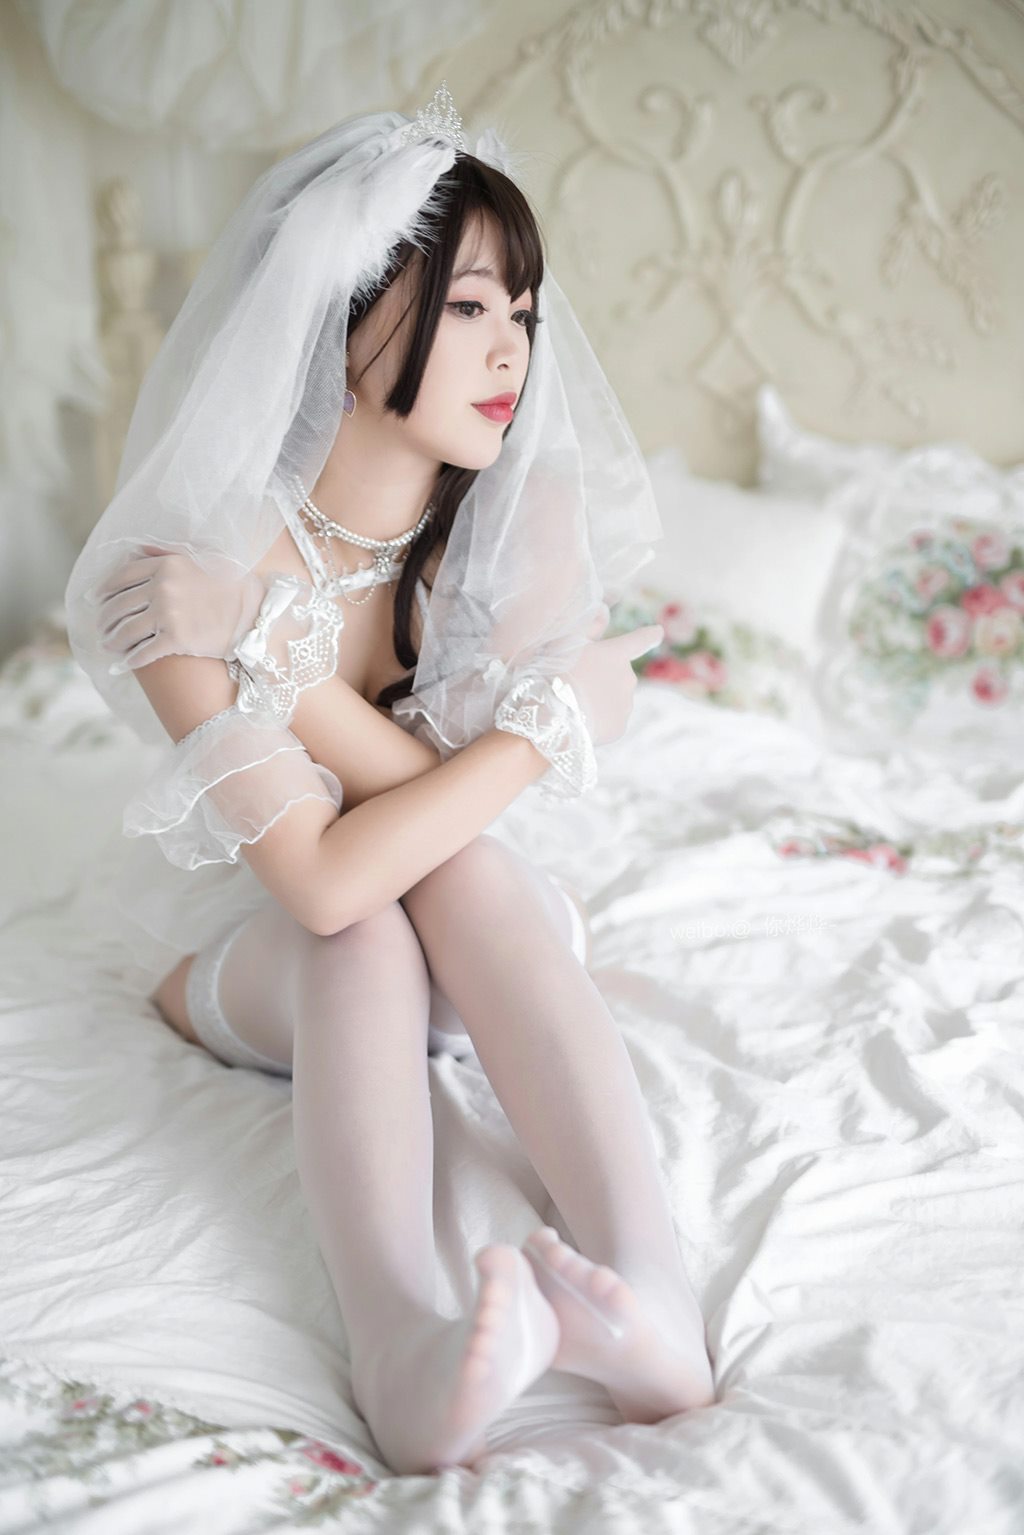 网红美女白烨白天鹅白色情趣婚纱内衣加白色丝袜美腿性感私房写真集